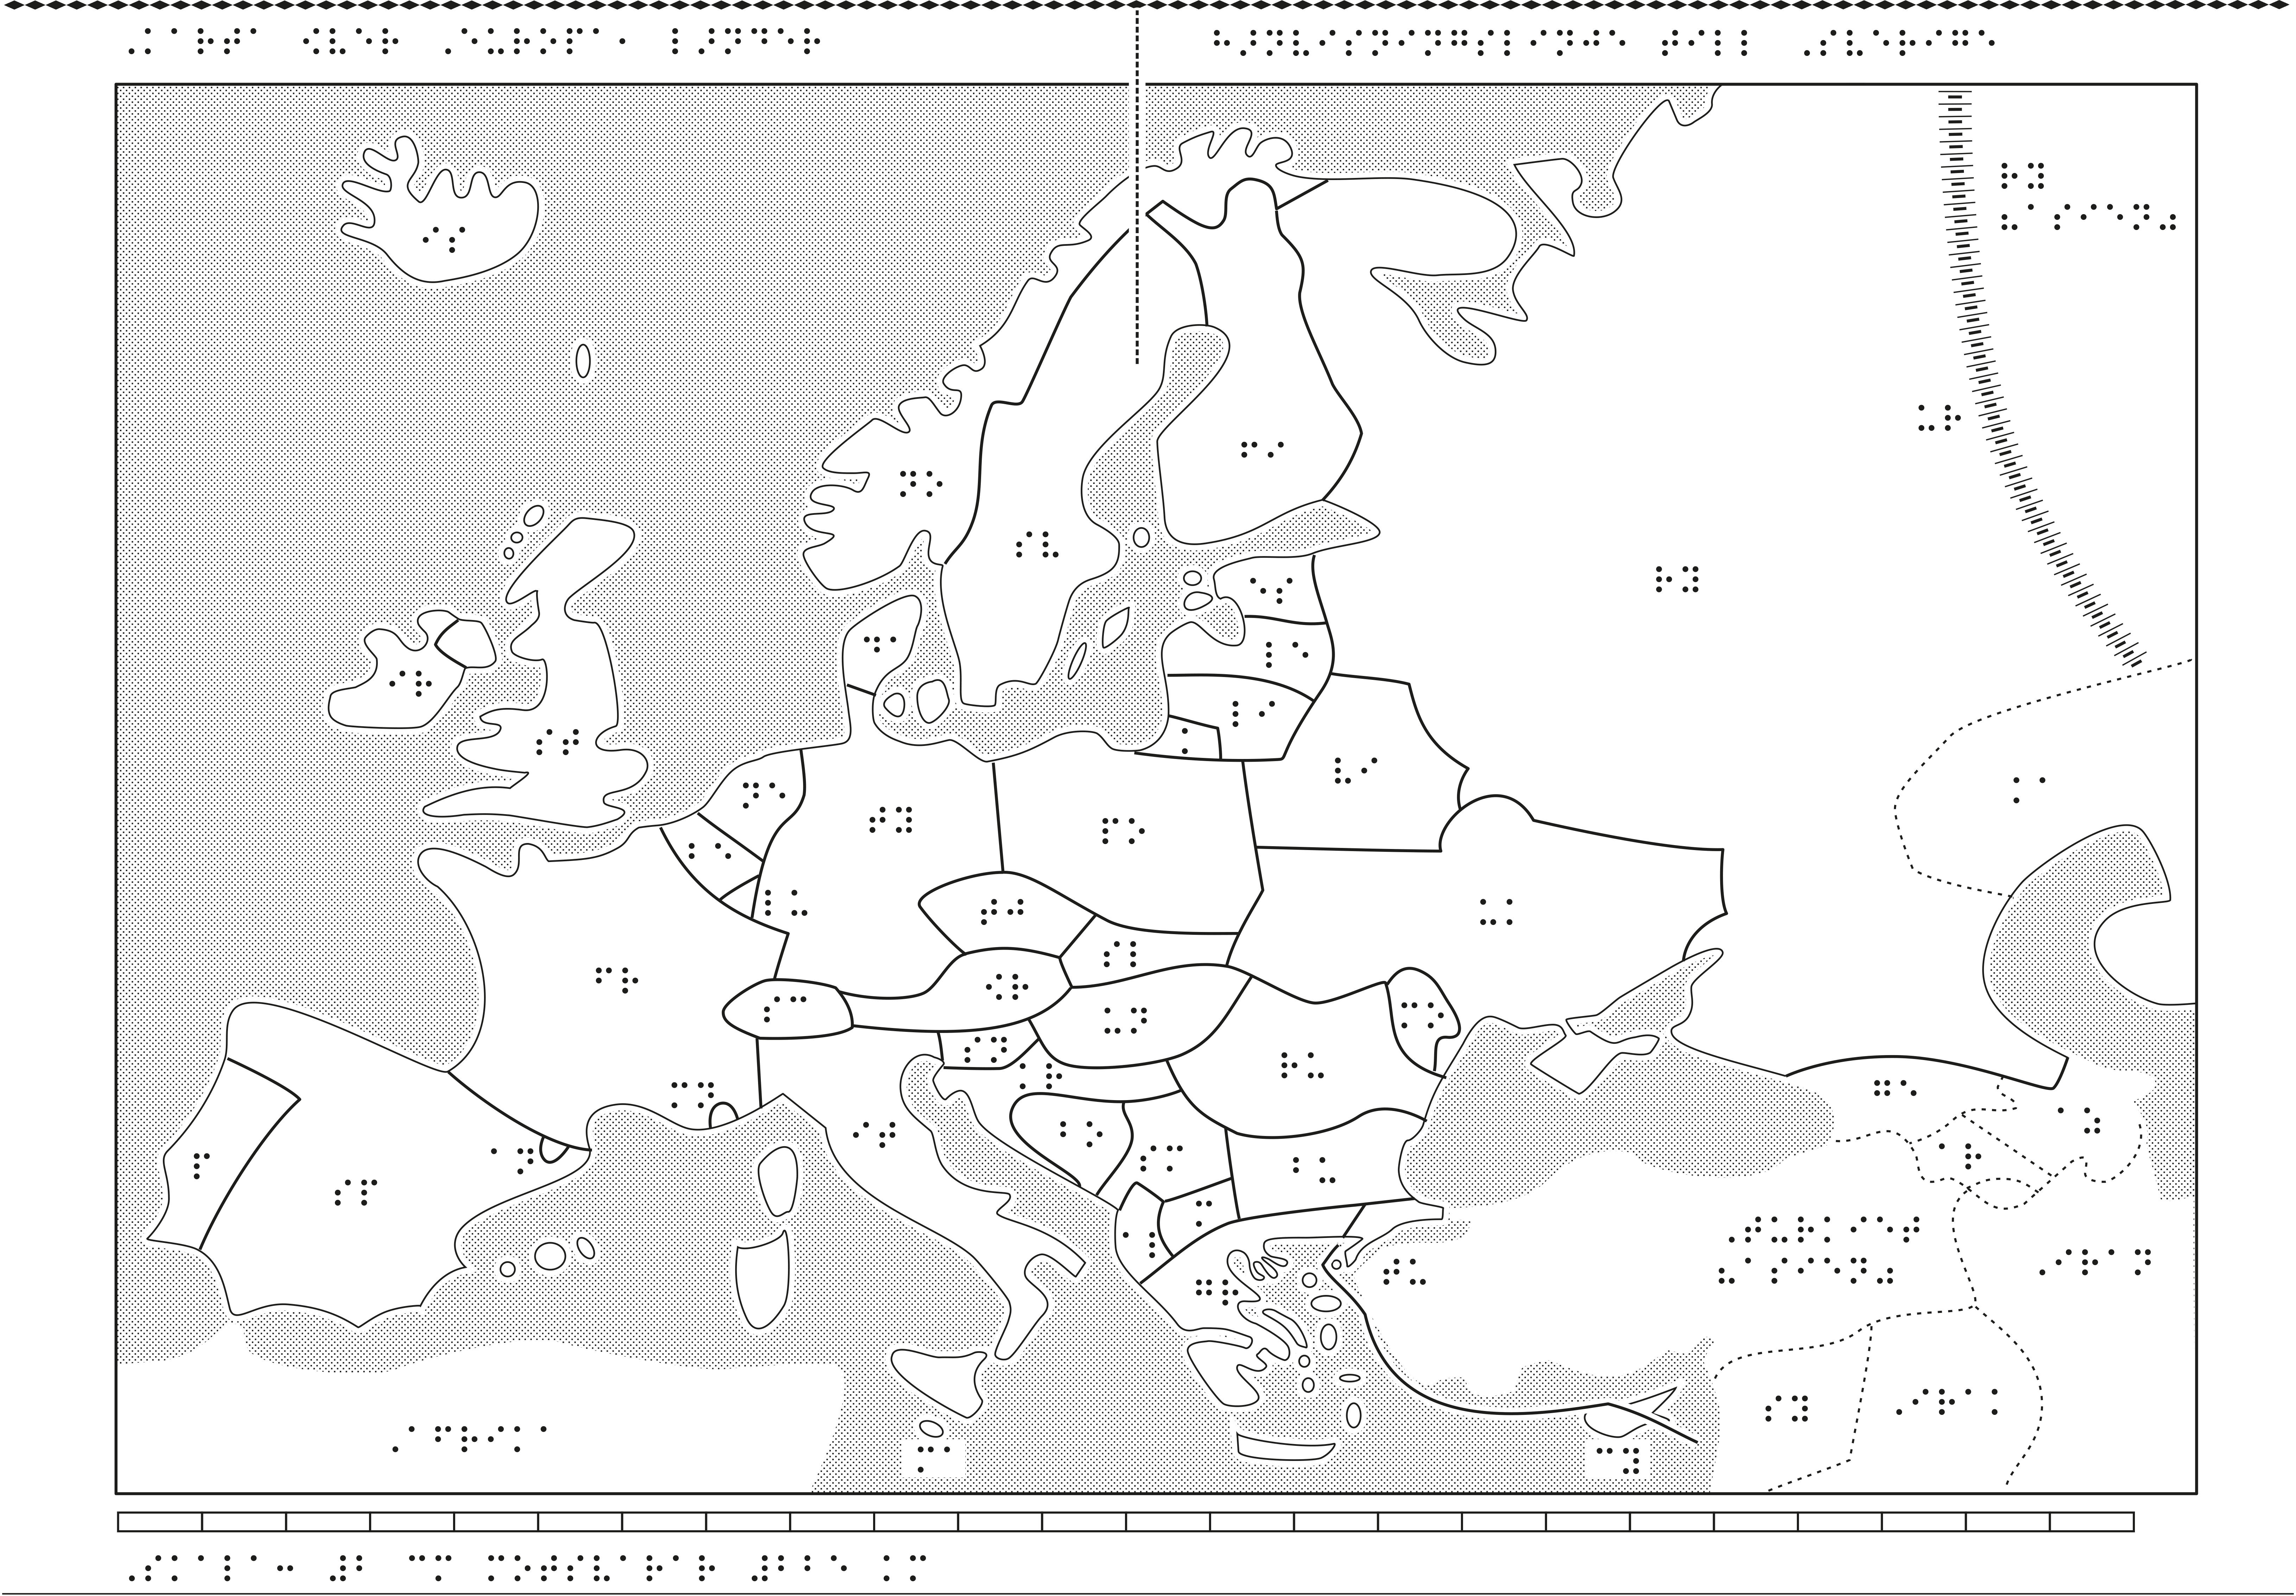 Stor Europakarta med EU - SPSM Webbutiken